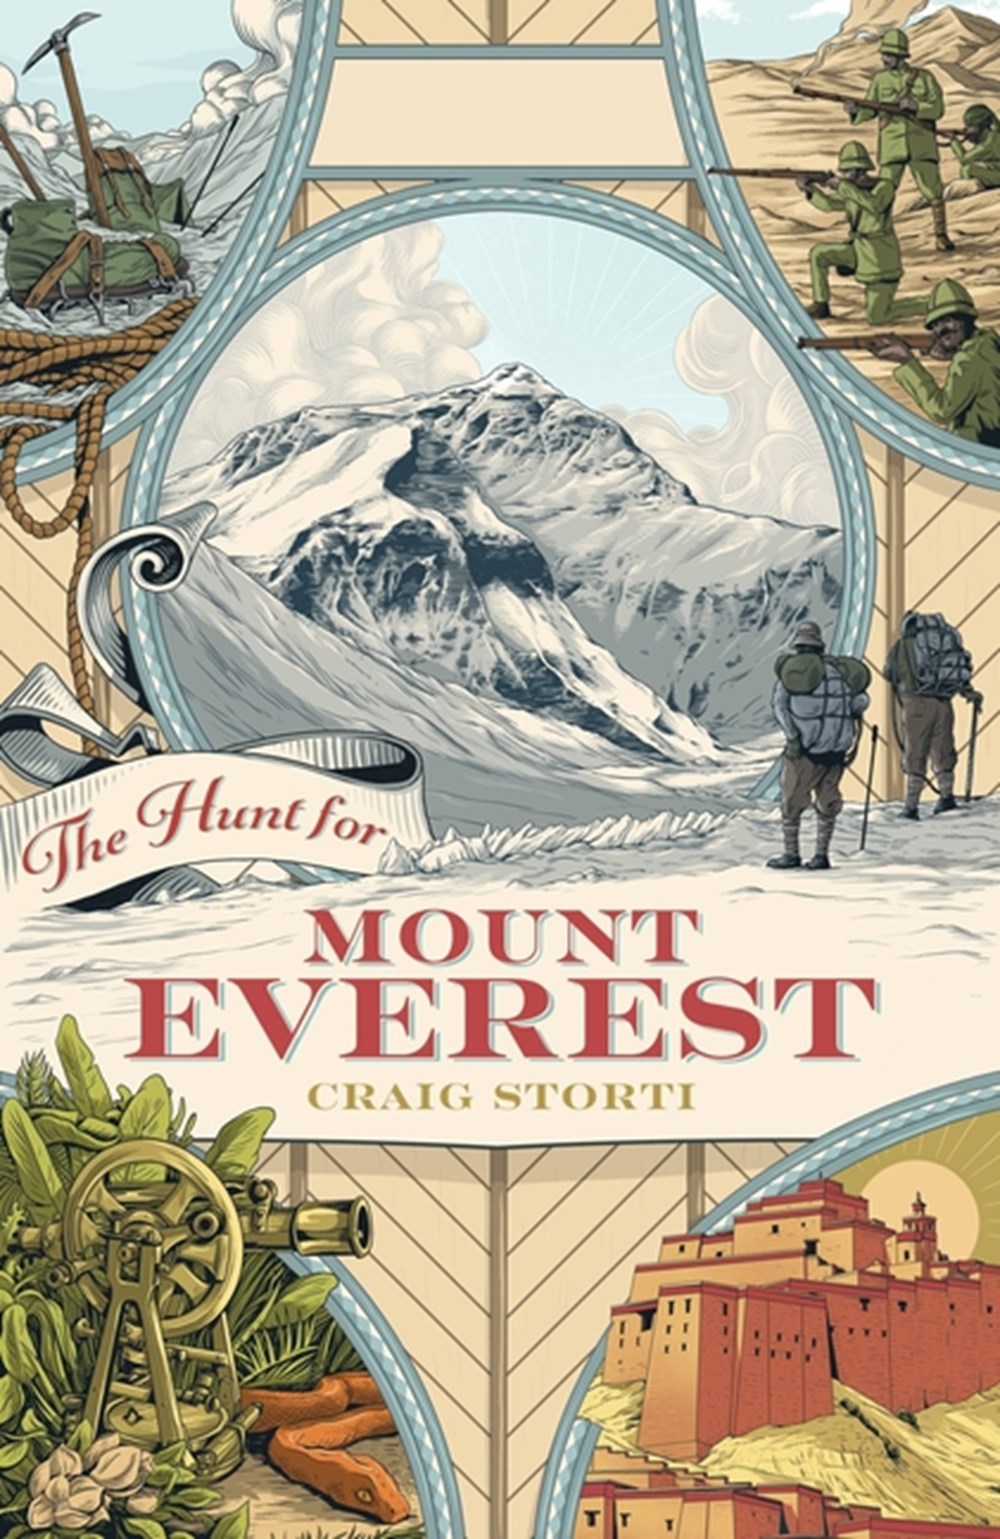 Hunt for Mount Everest